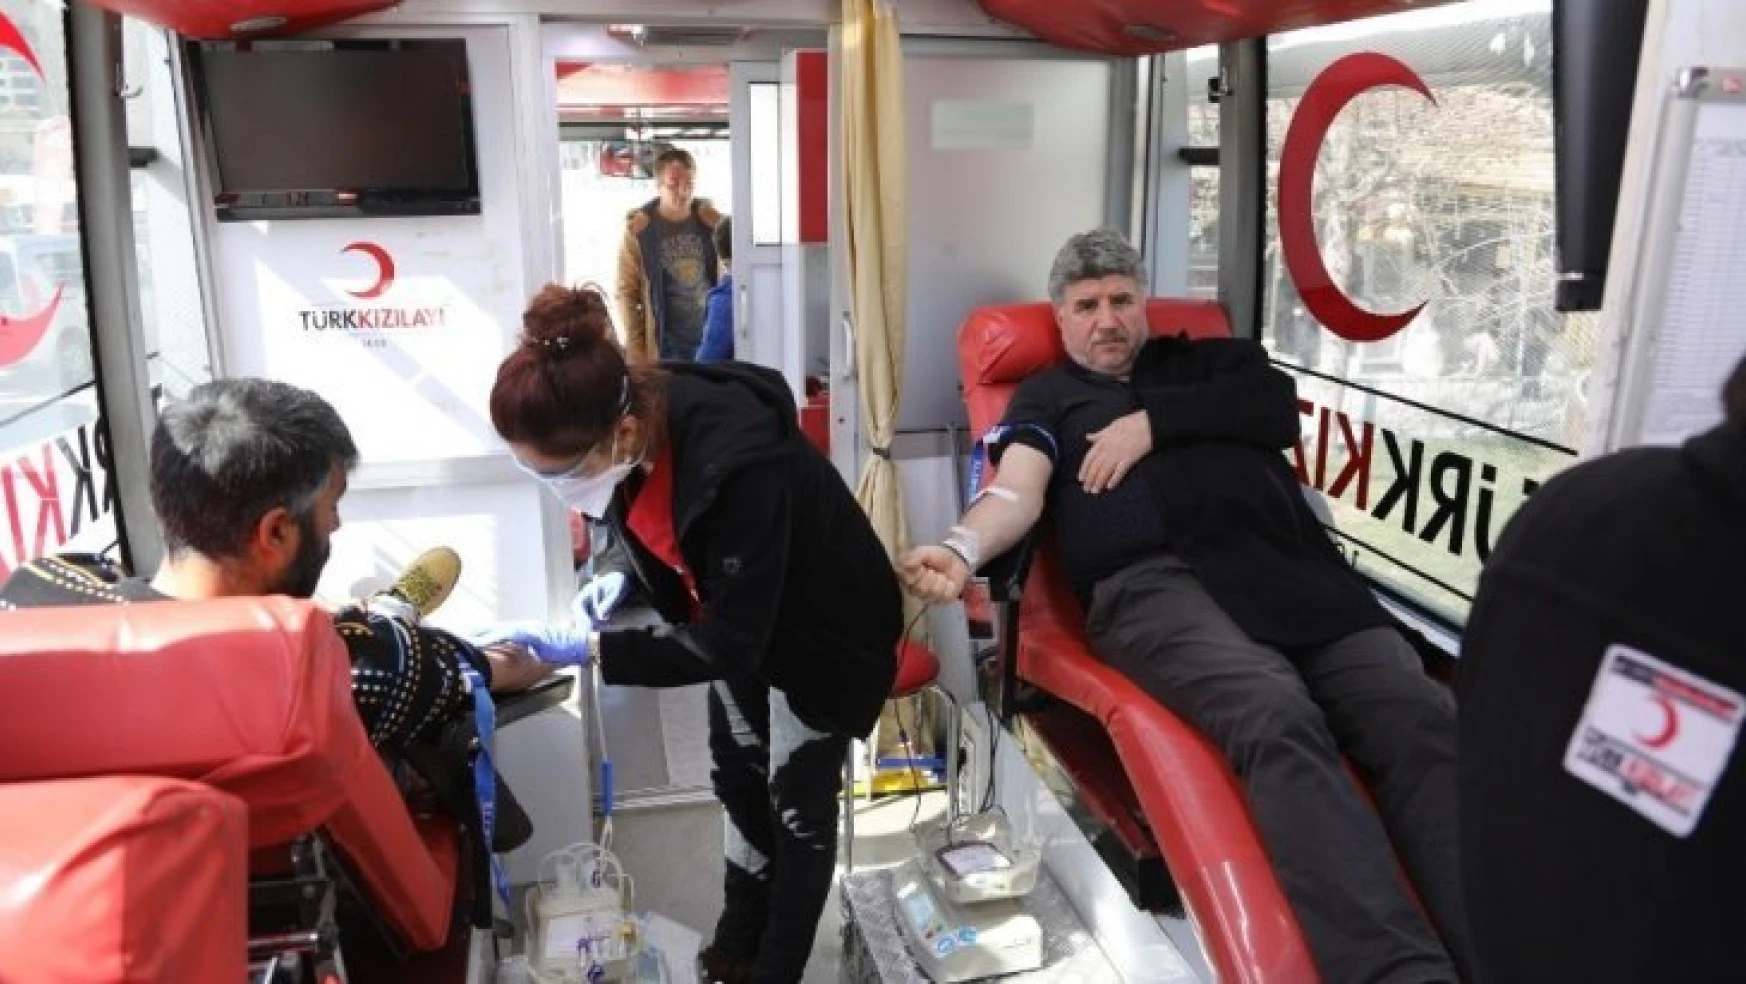 Darende'de kan kampanyasına destek